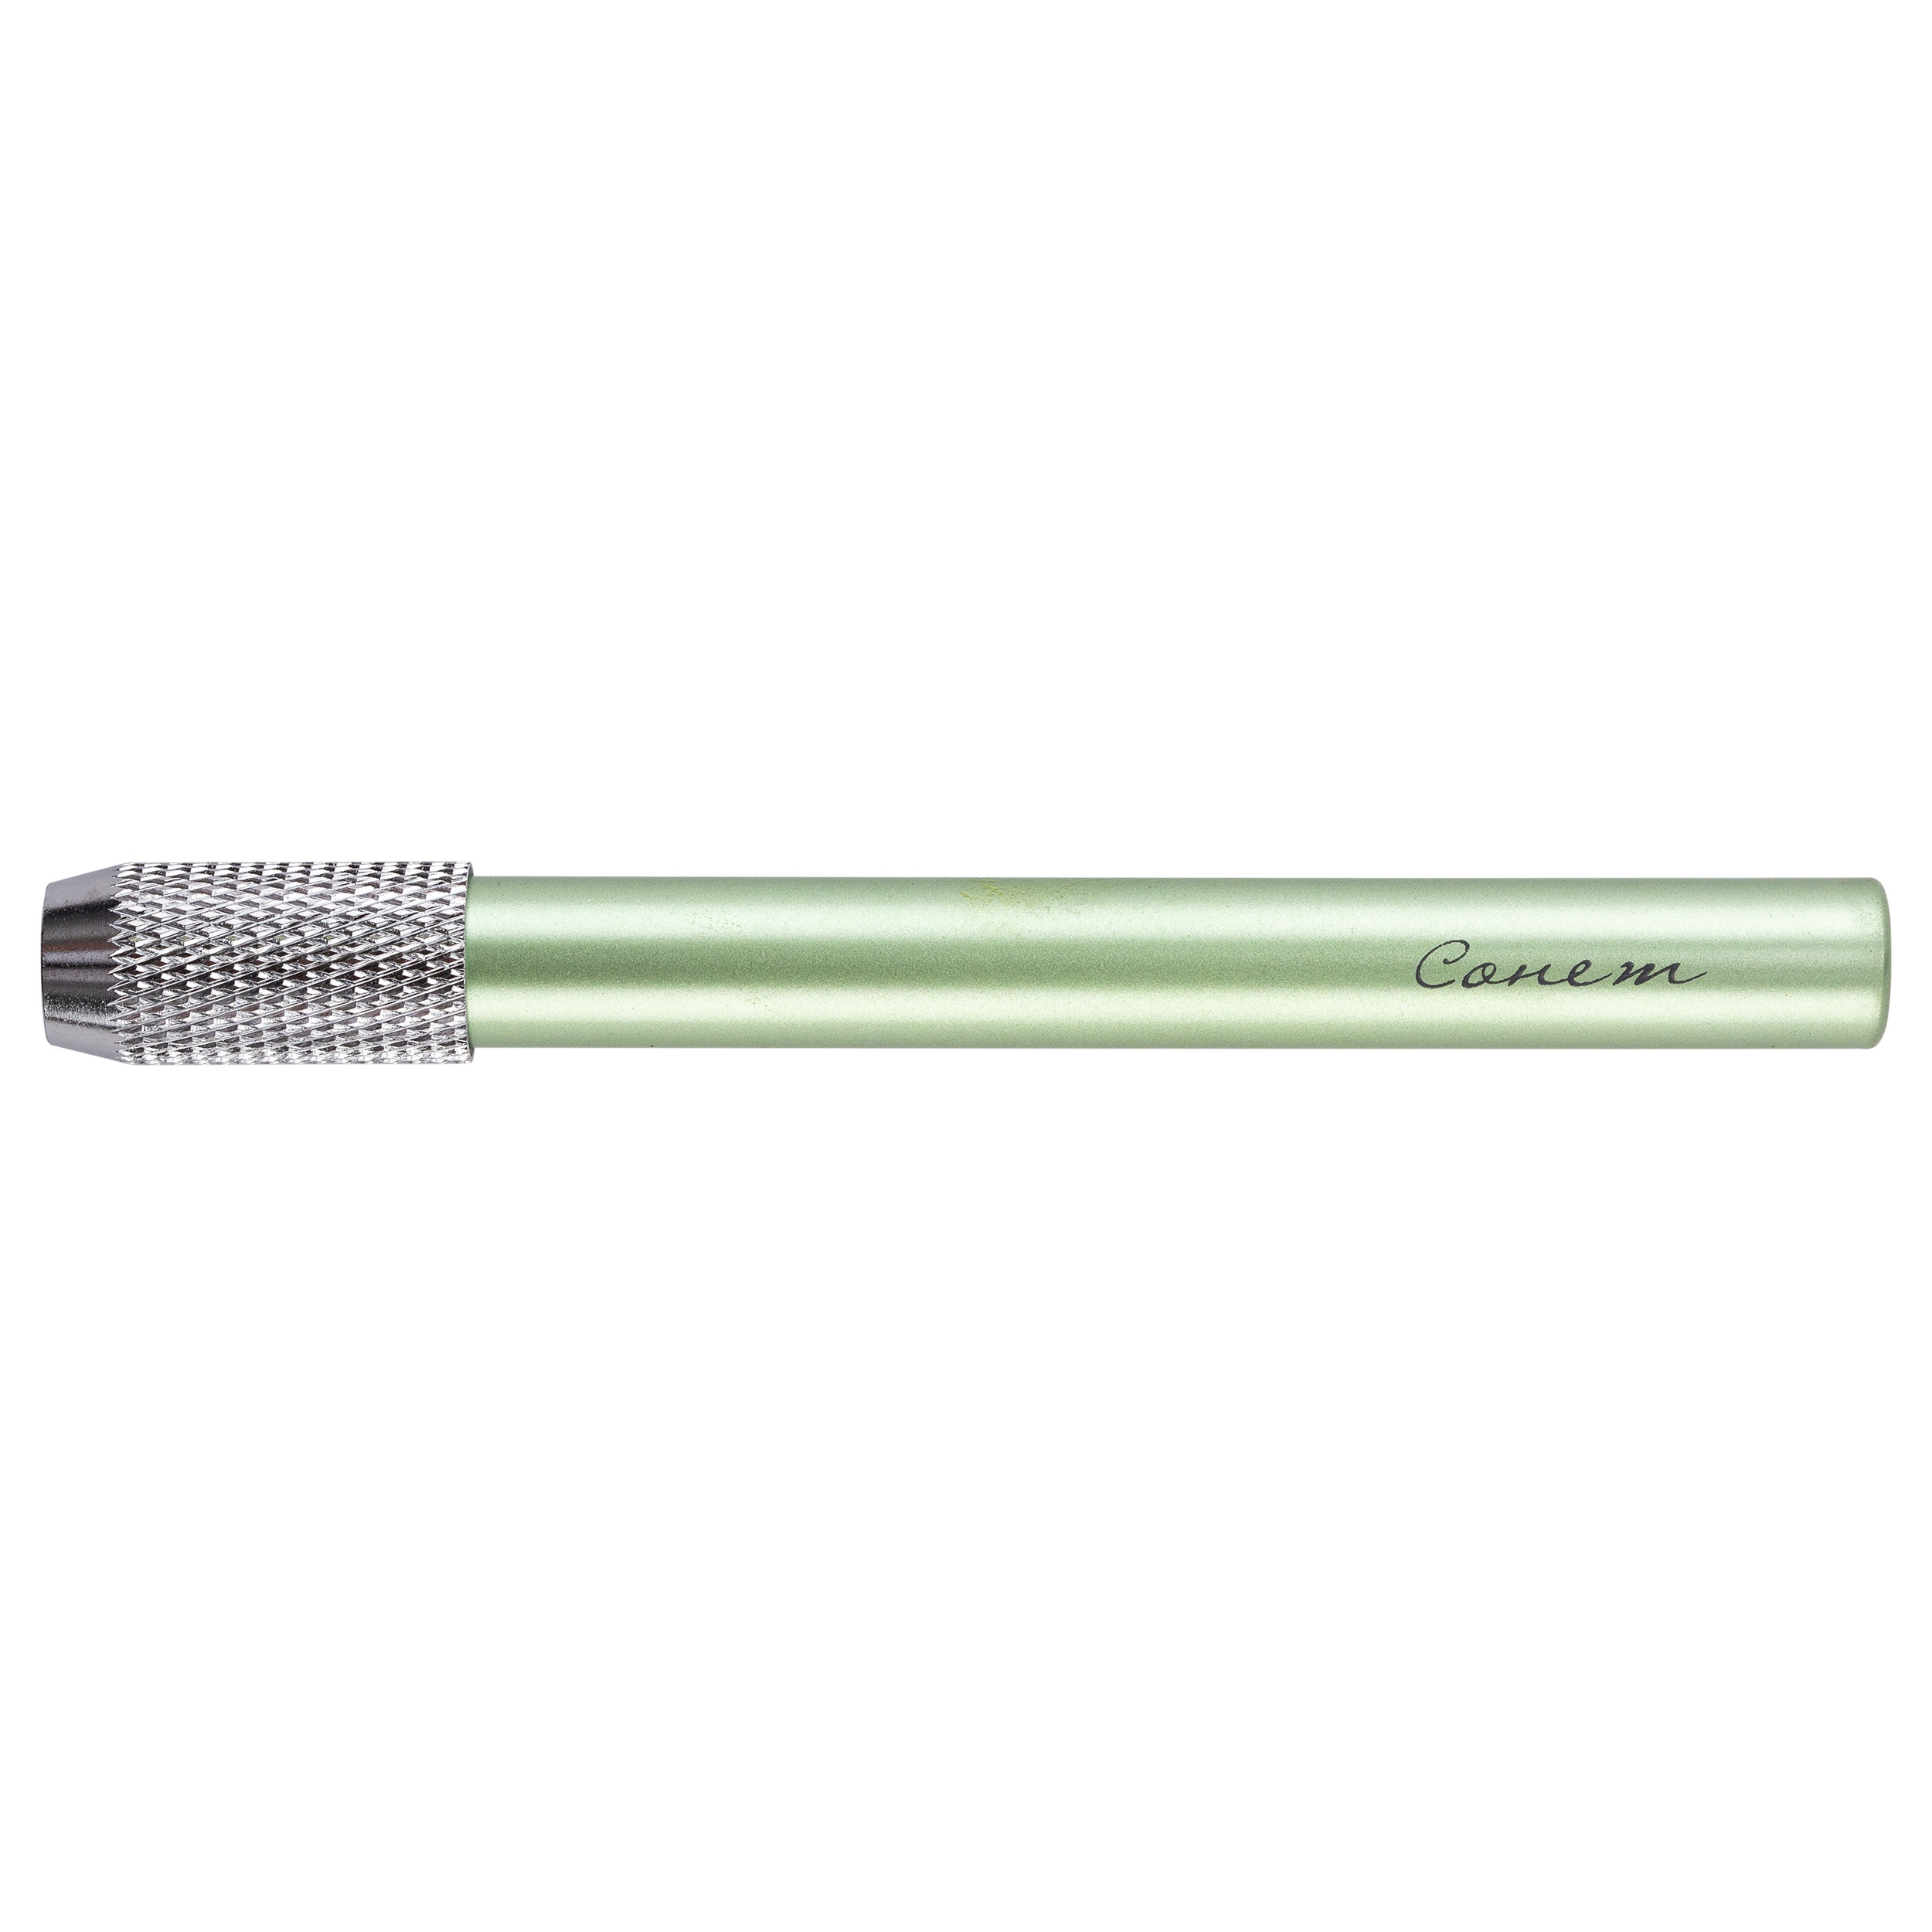 Удлинитель для карандаша СОНЕТ d:7-7,8мм металл зеленый металлик по 127.00 руб от Невская палитра